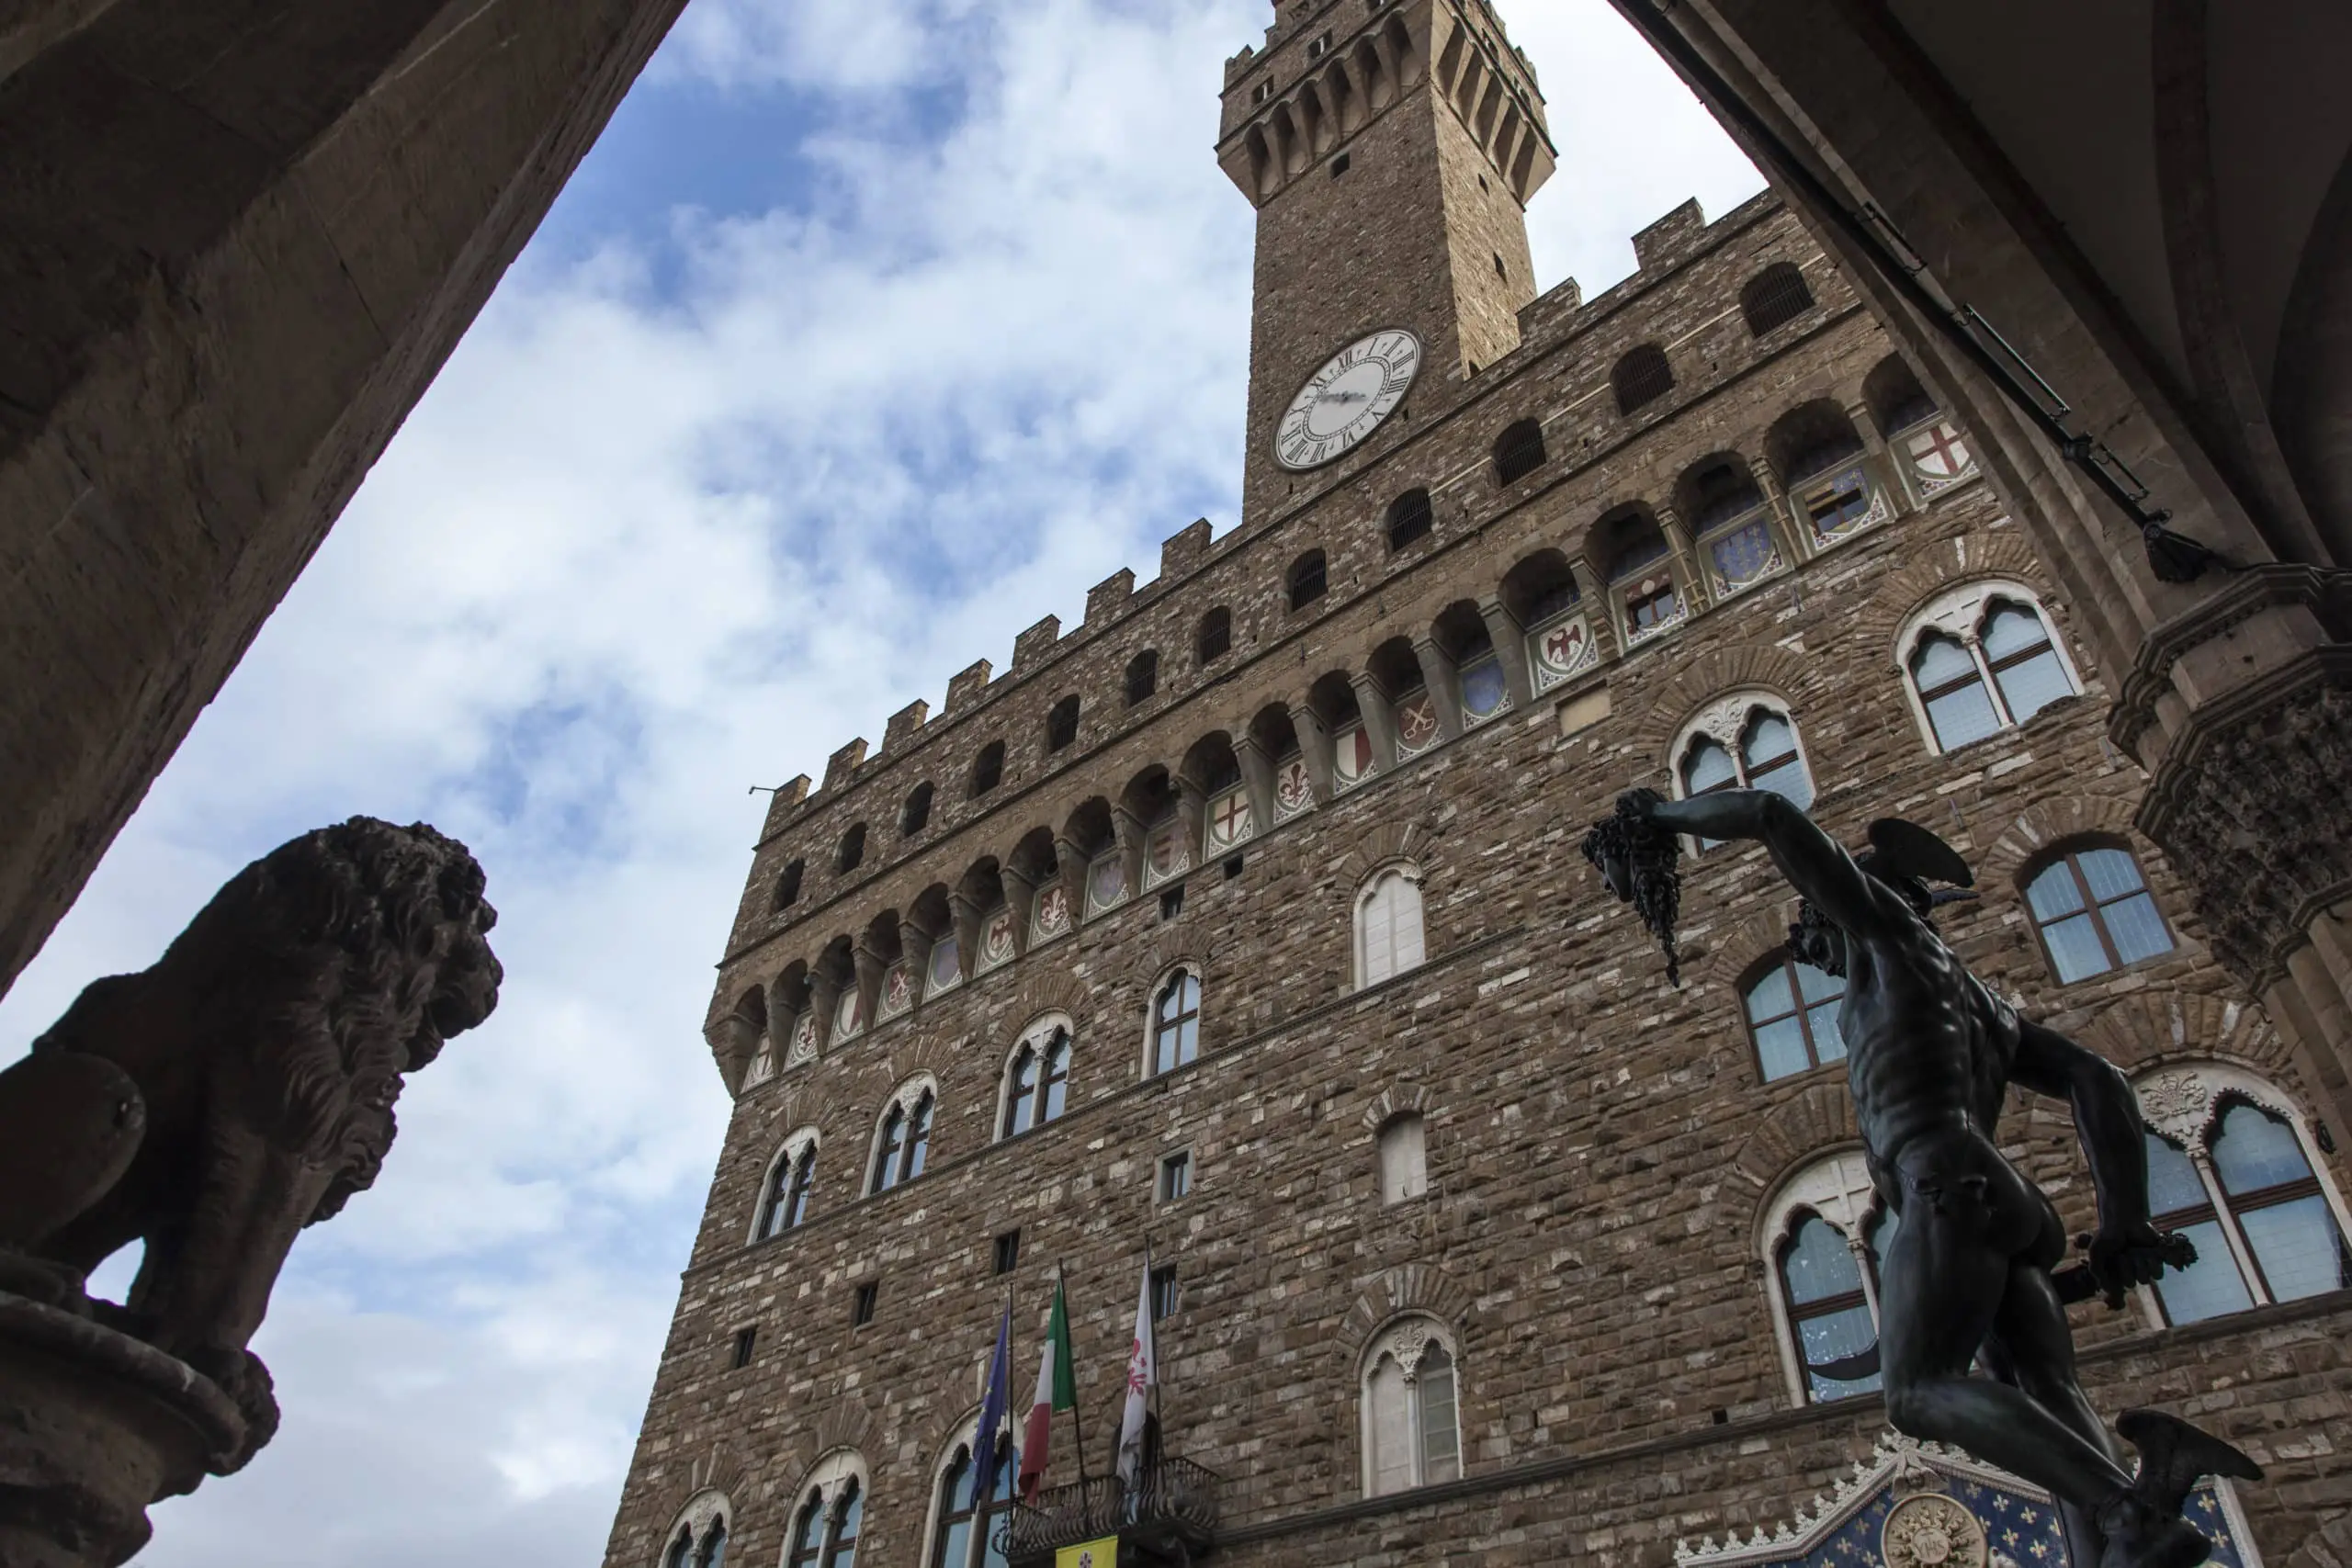 Un Paseo florentino, visita guiada para descubrir la ciudad de Florencia